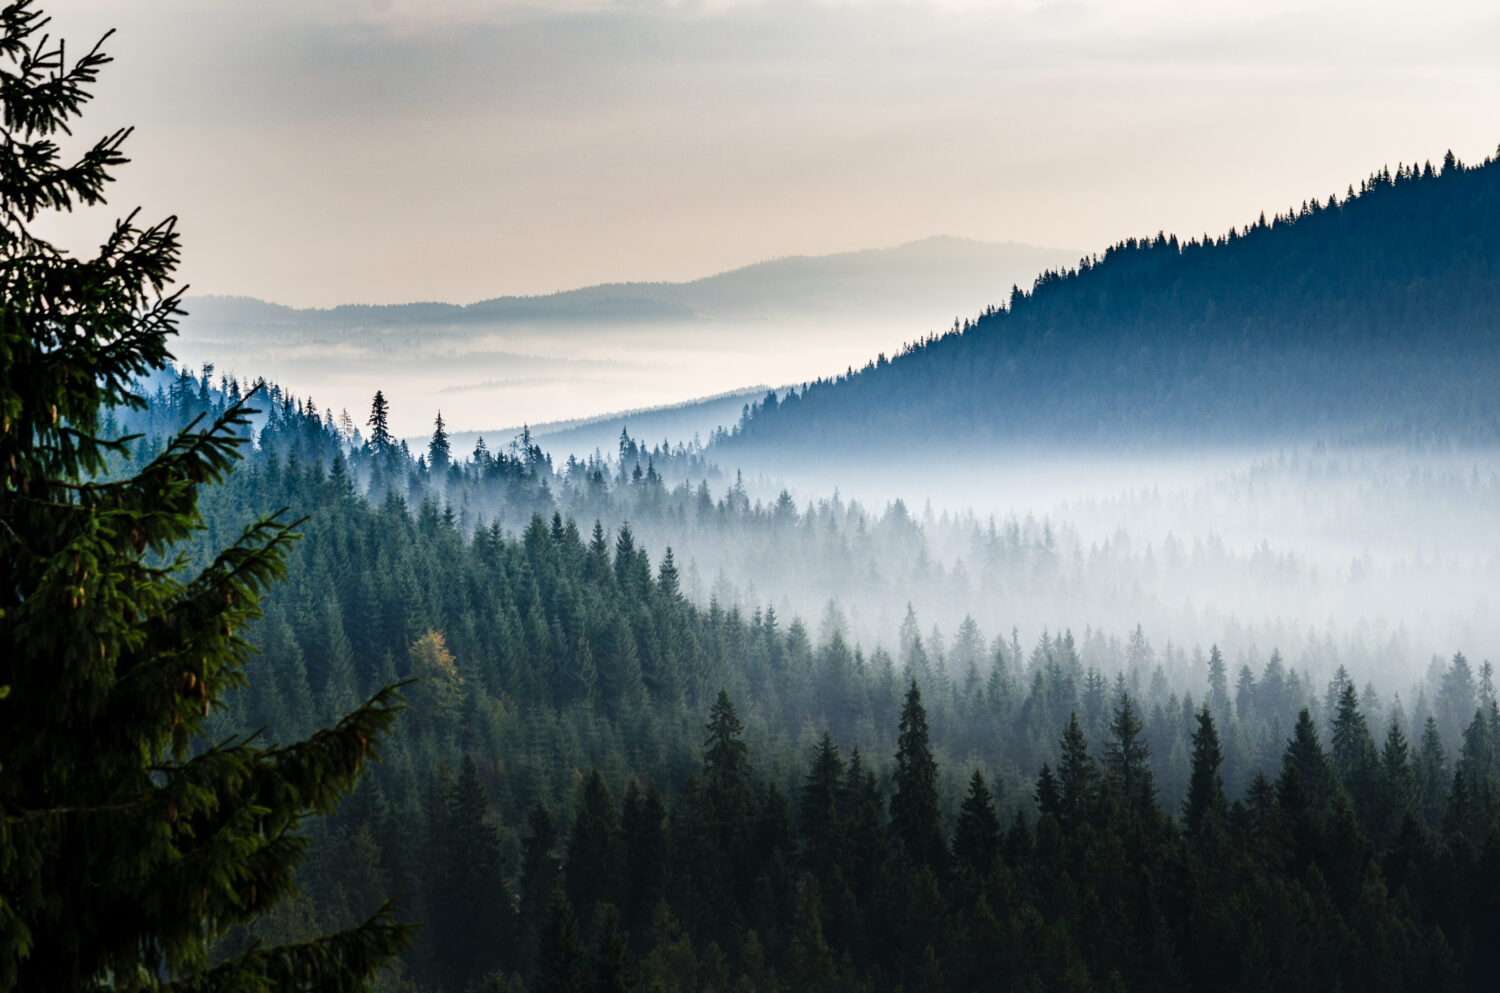 Valle mattutina con foresta e nebbia vista dall'alto.  Foresta di pini mistici in montagna con nebbia sopra gli alberi.